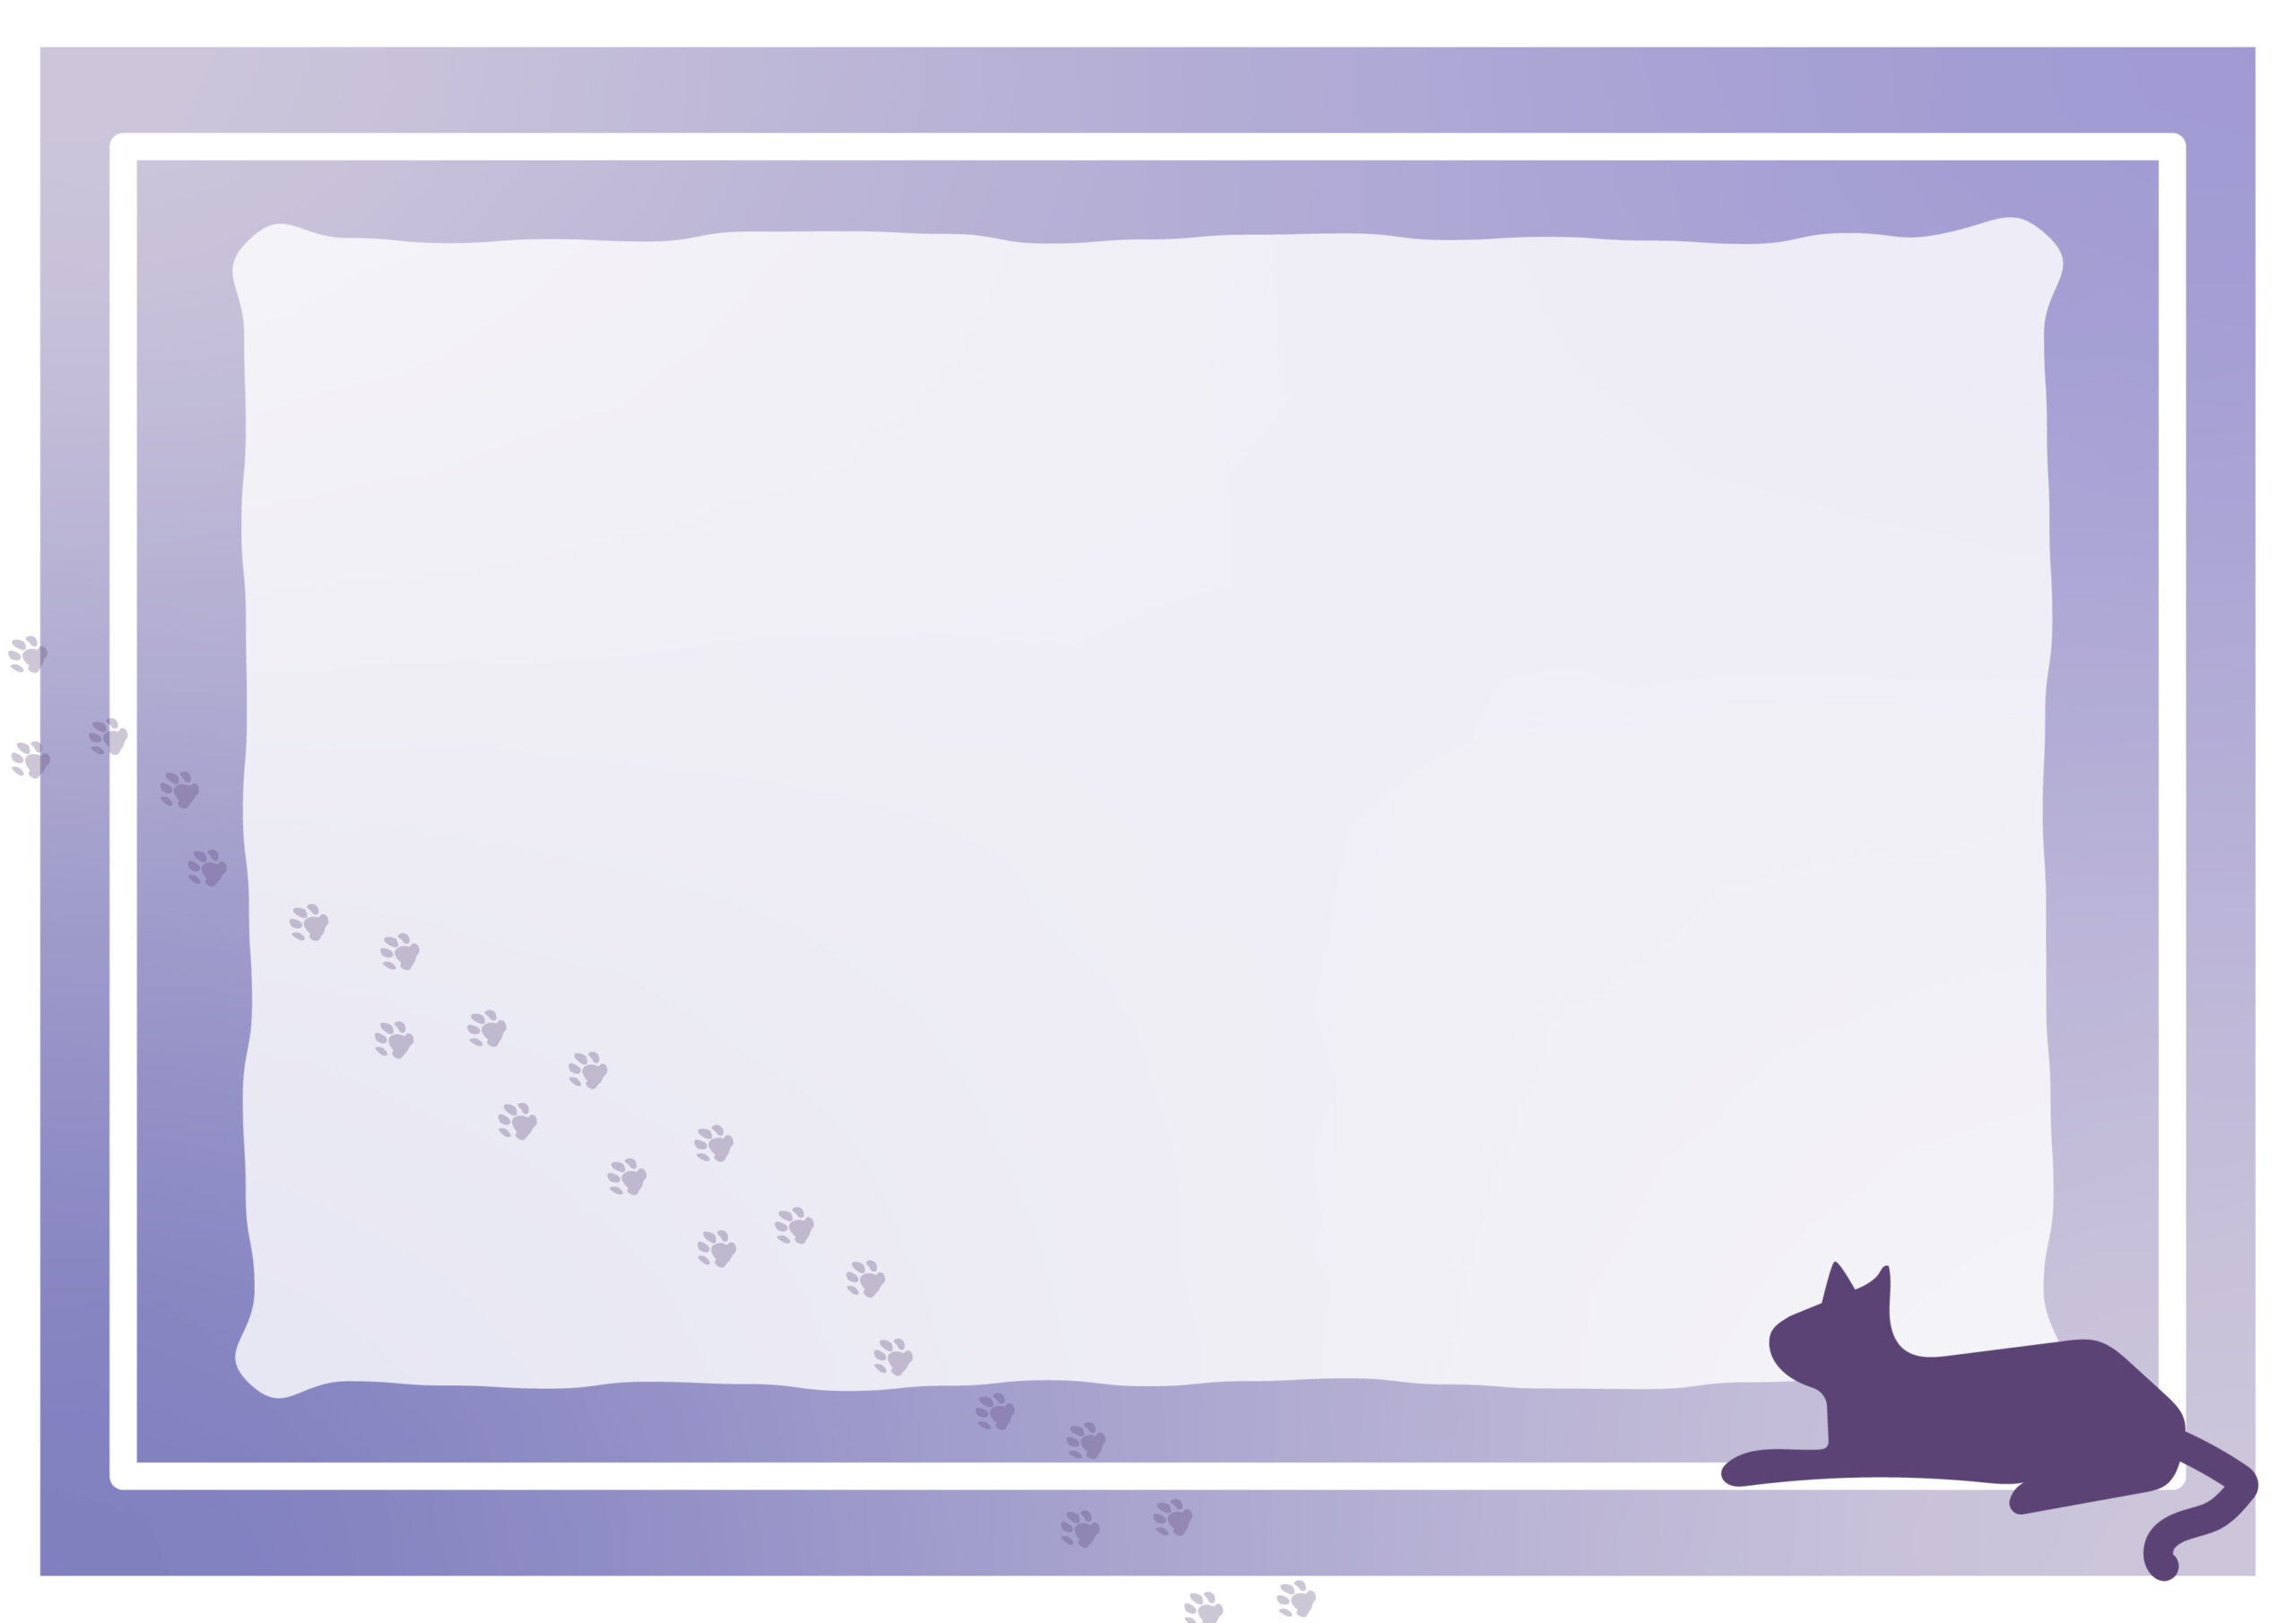 綺麗な紫カラーのフレームと猫と足跡のシルエットイラストでデザインされたテンプレートになります。保護猫の譲渡会のチラシやポスター作成にいかがでしょうか。作成後印刷利用や、ホームページのお知らせやご案内に活用いただけます。ダウンロード：